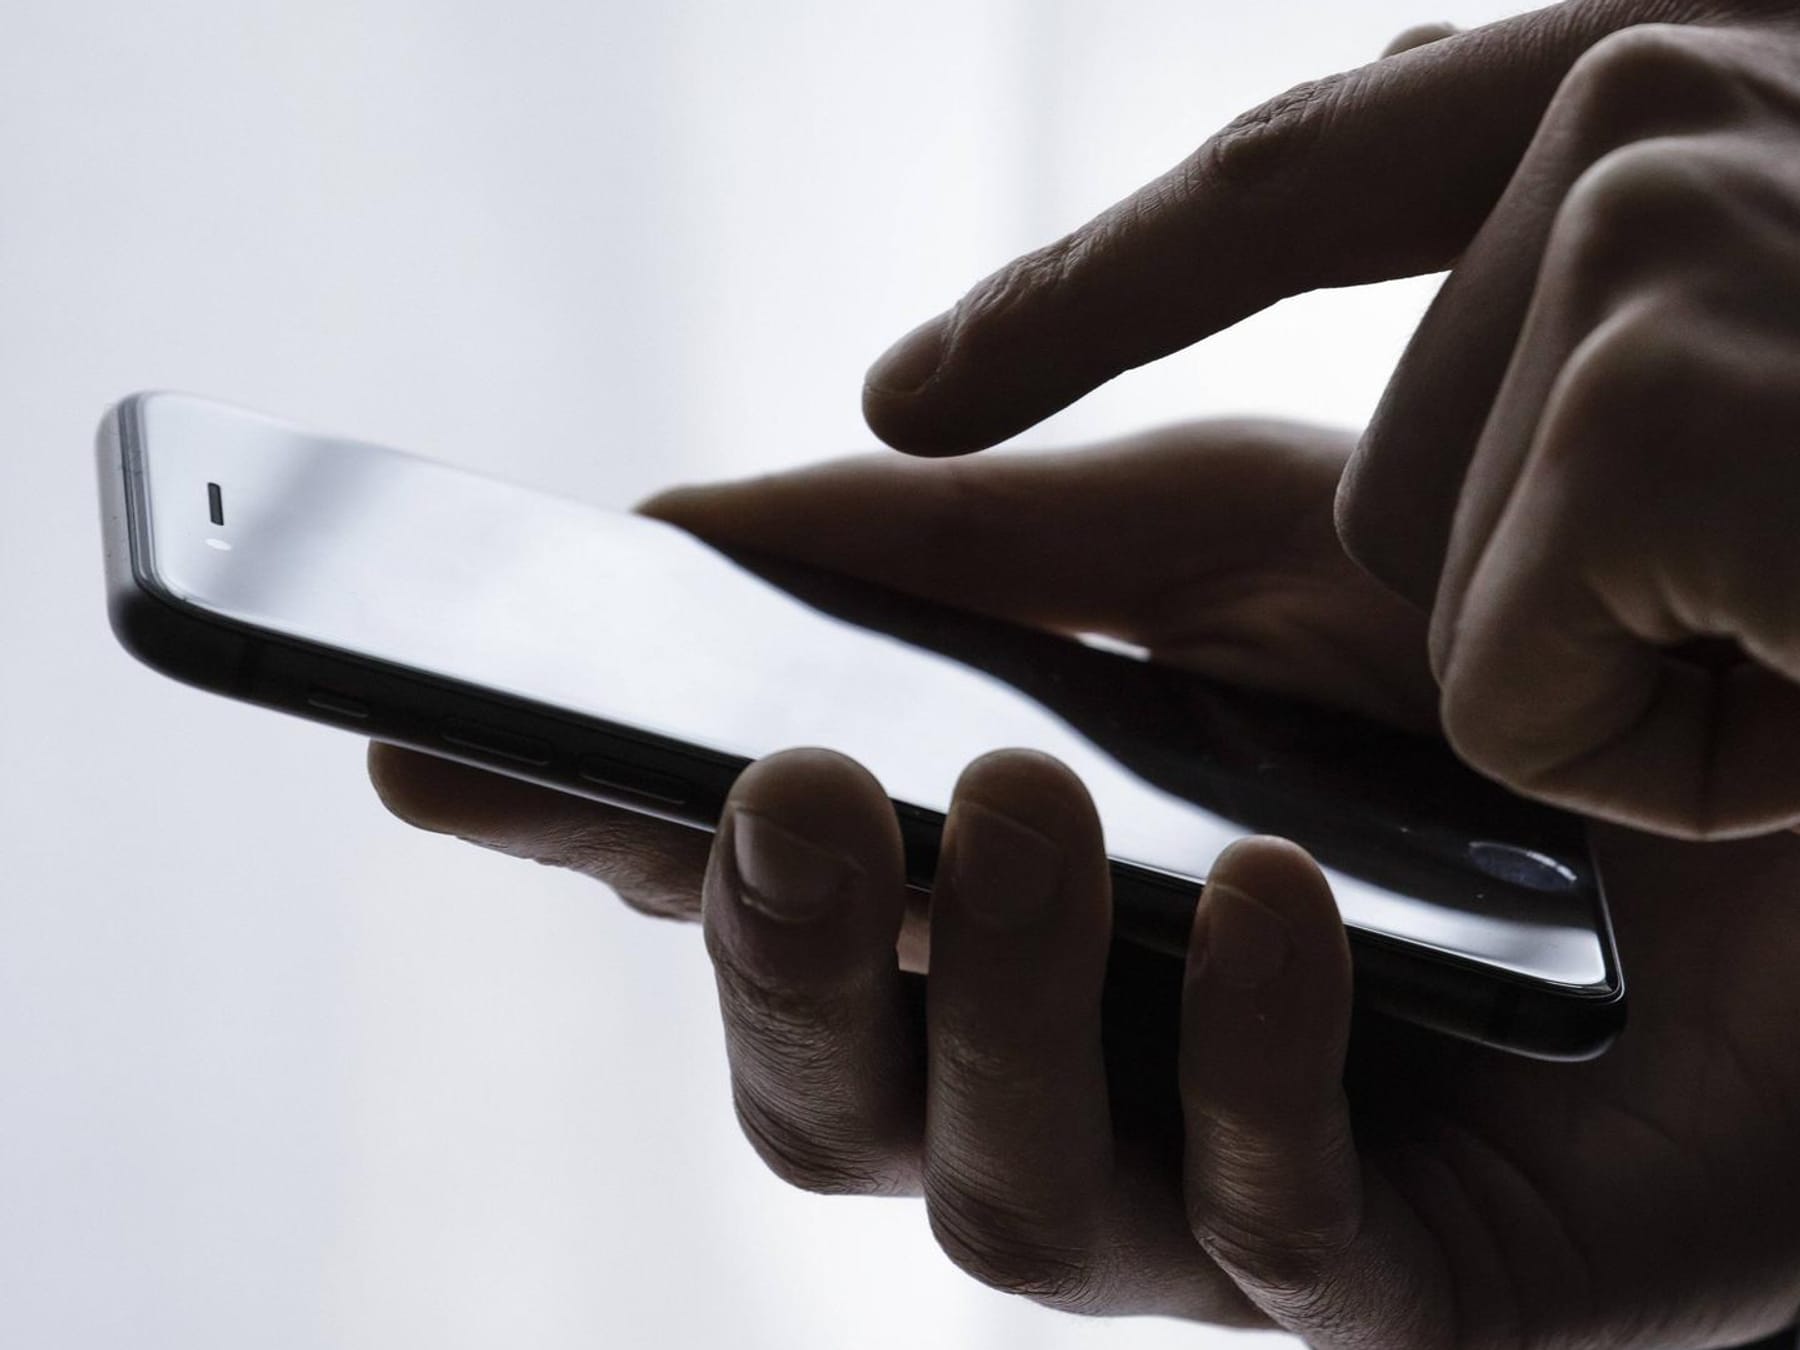 Smishing-Betrug: Phishing-SMS erhalten? Das sollten Sie beachten